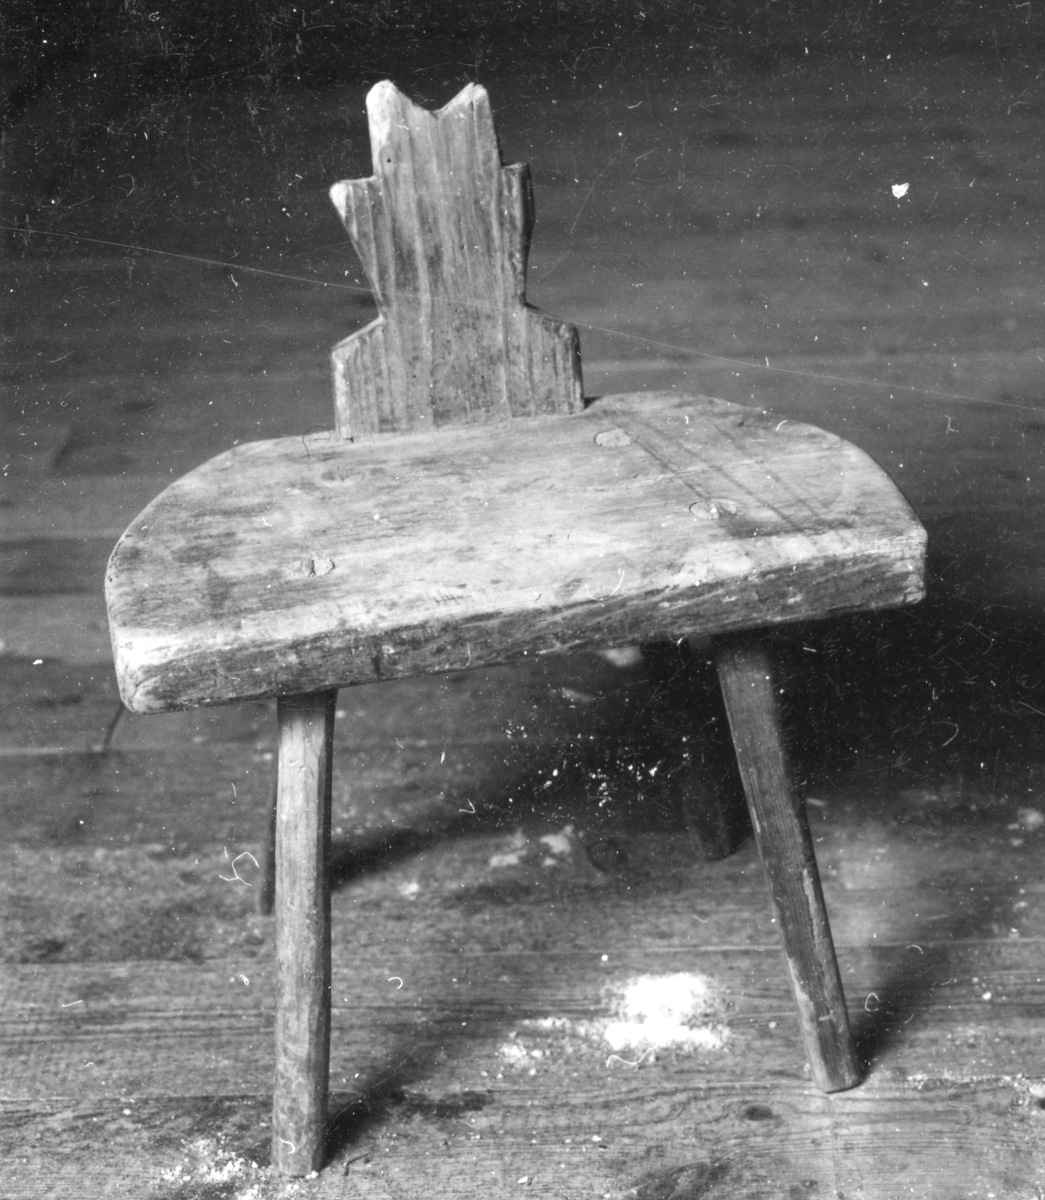 Barnstol med spår av brun målning, halvcirkelformad sits med infälld ryggbricka. 4 st runda något utställda ben intappade i sittsen.